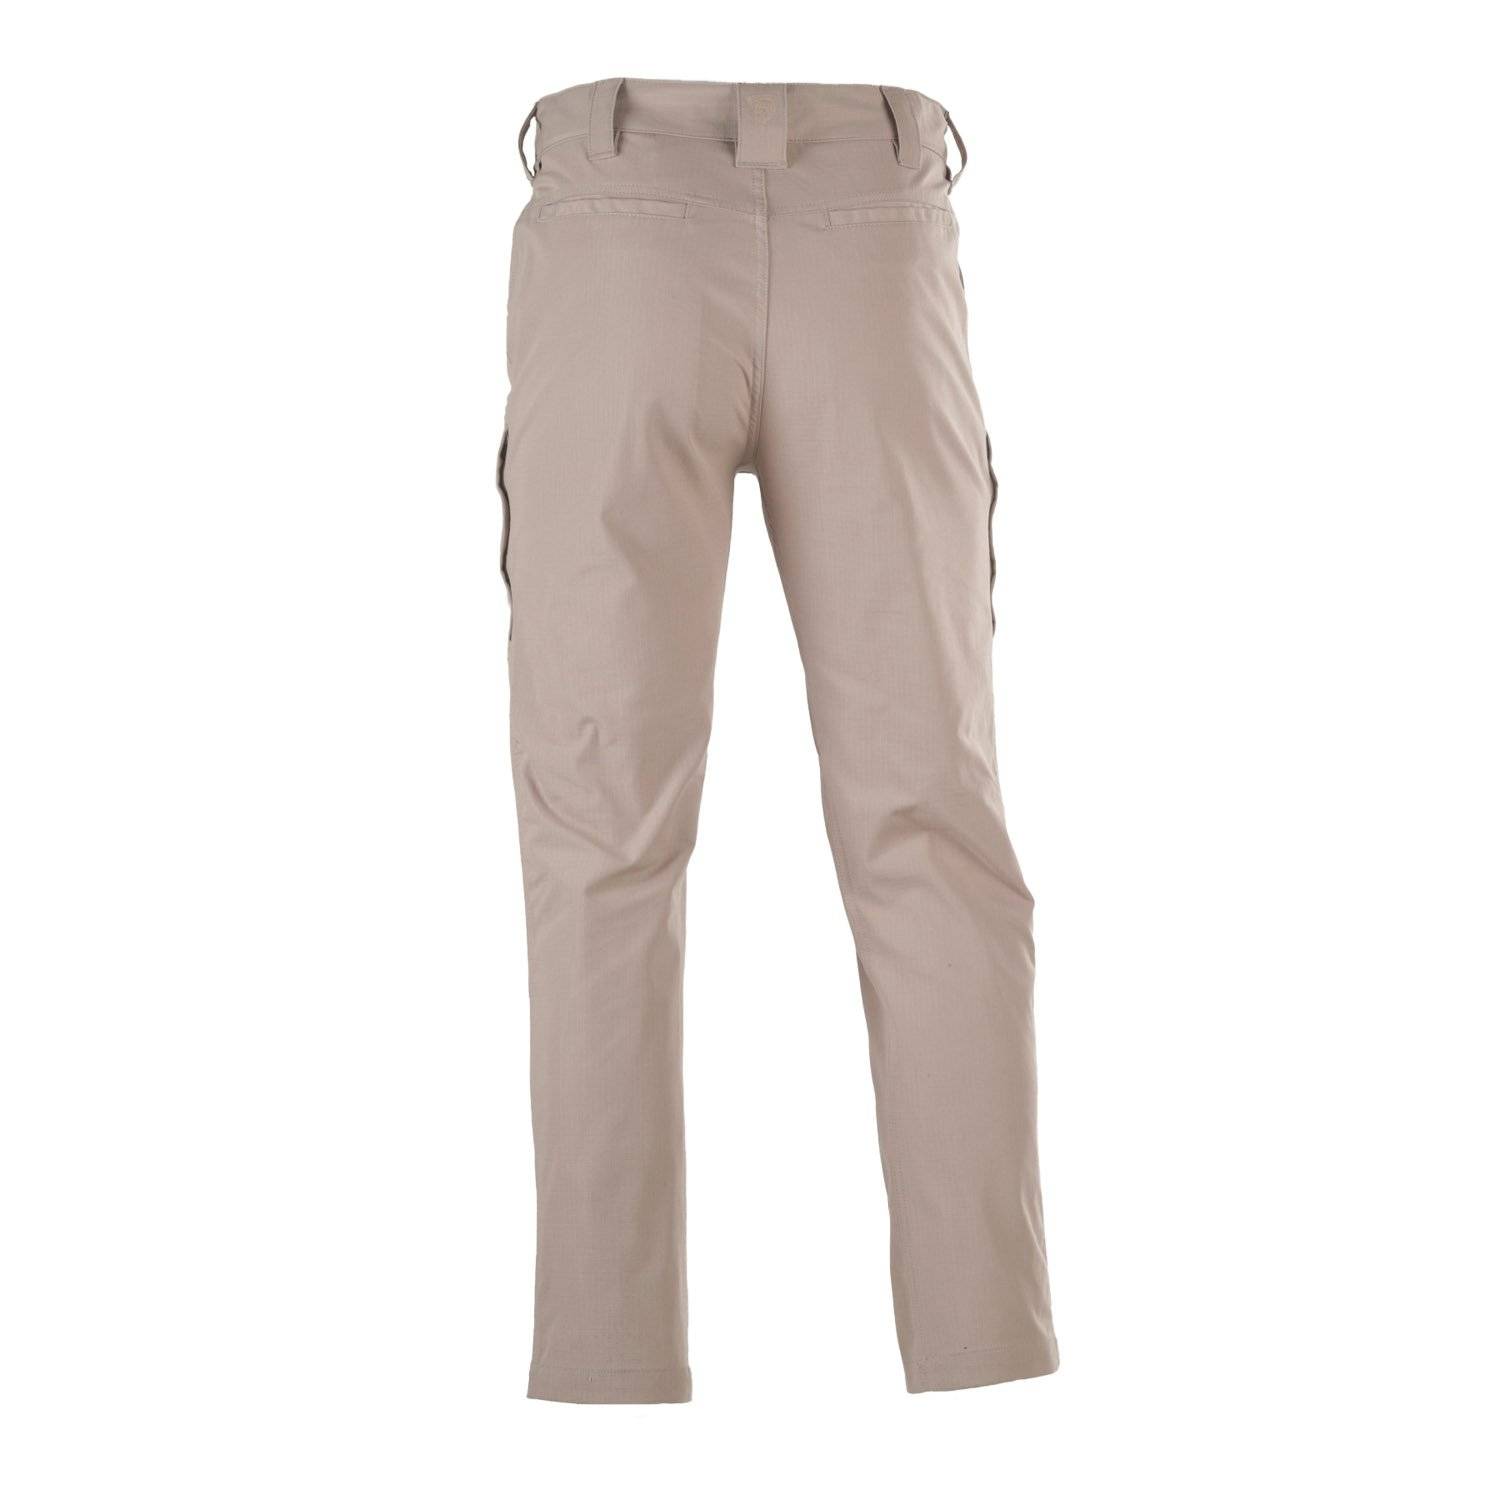 Galls Men's Field Operative Pants | Men's Tactical Pants